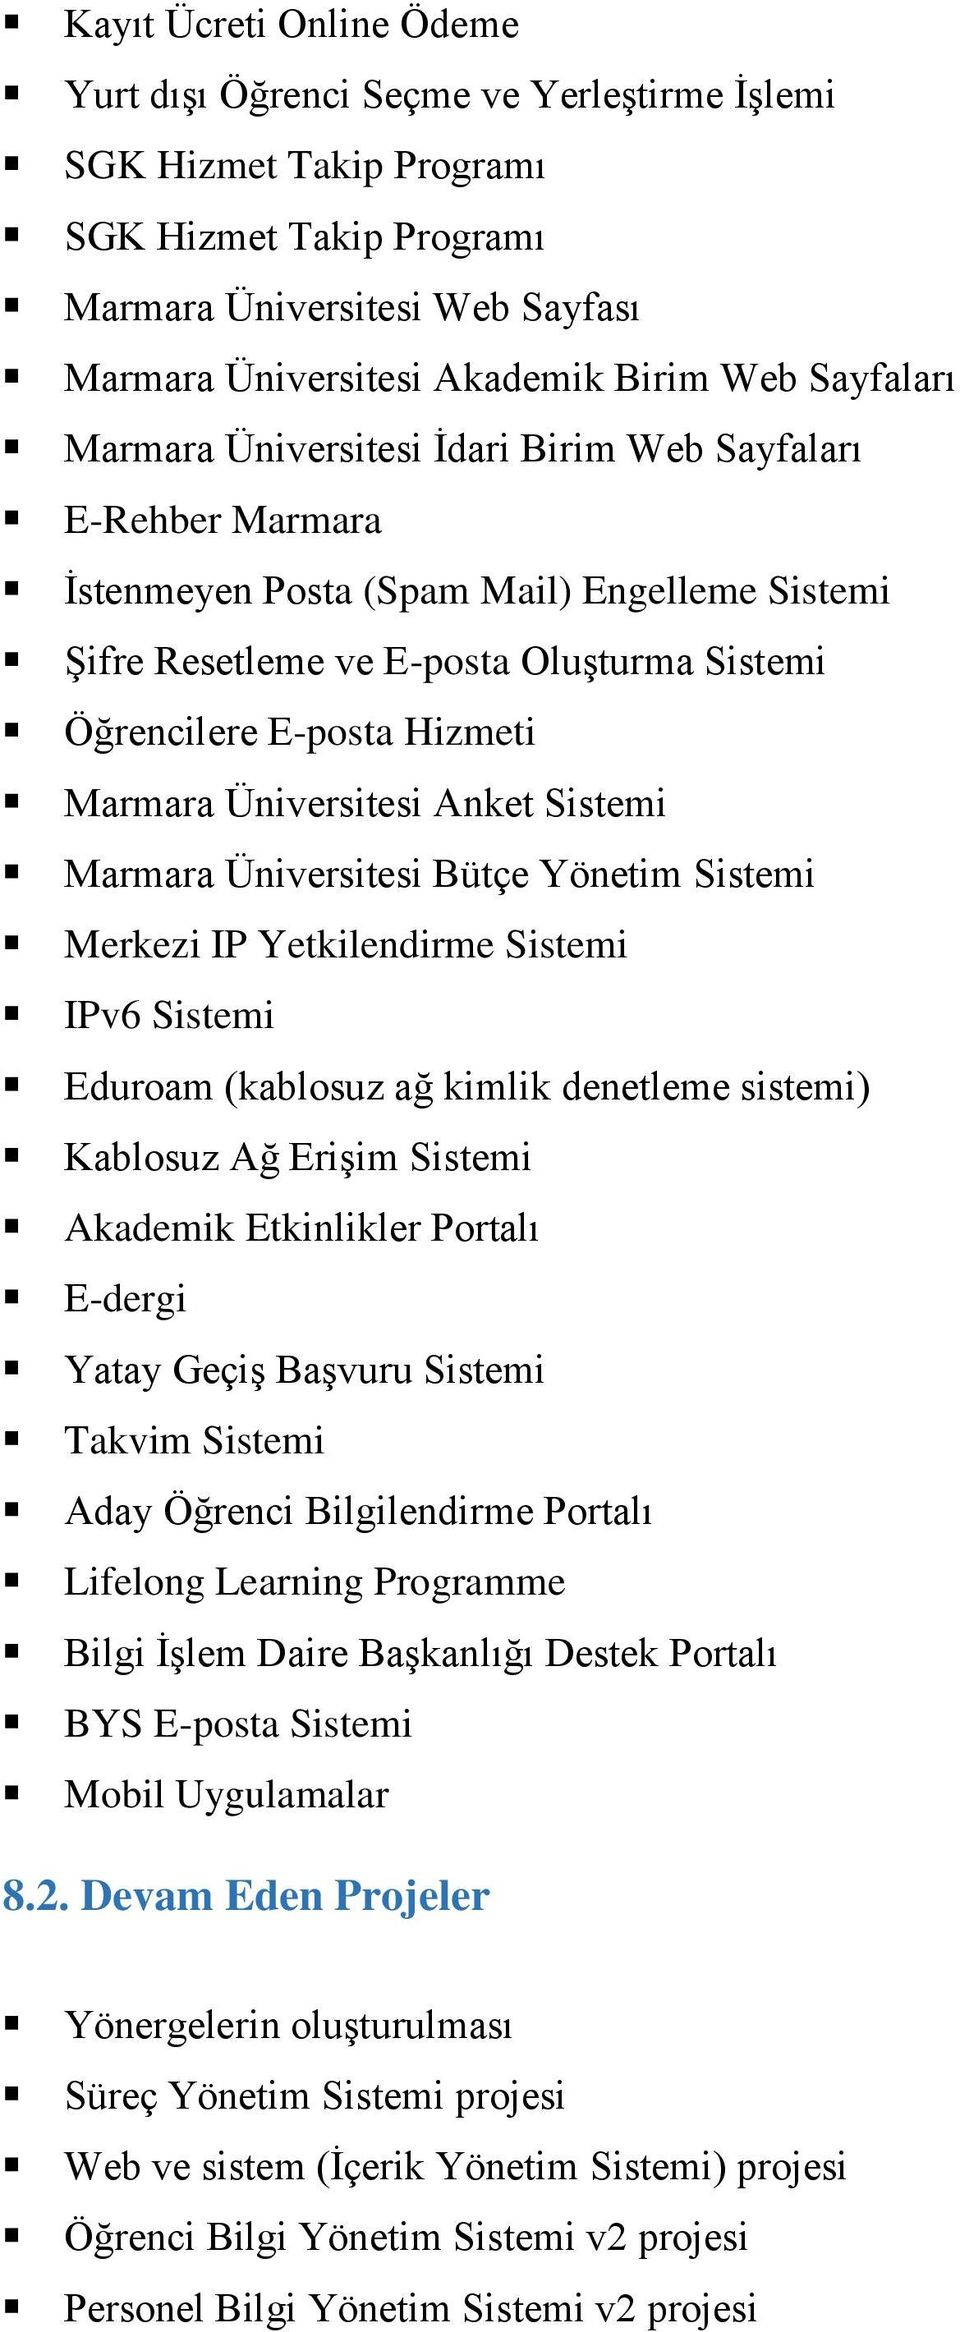 Marmara Üniversitesi Anket Sistemi Marmara Üniversitesi Bütçe Yönetim Sistemi Merkezi IP Yetkilendirme Sistemi IPv6 Sistemi Eduroam (kablosuz ağ kimlik denetleme sistemi) Kablosuz Ağ Erişim Sistemi